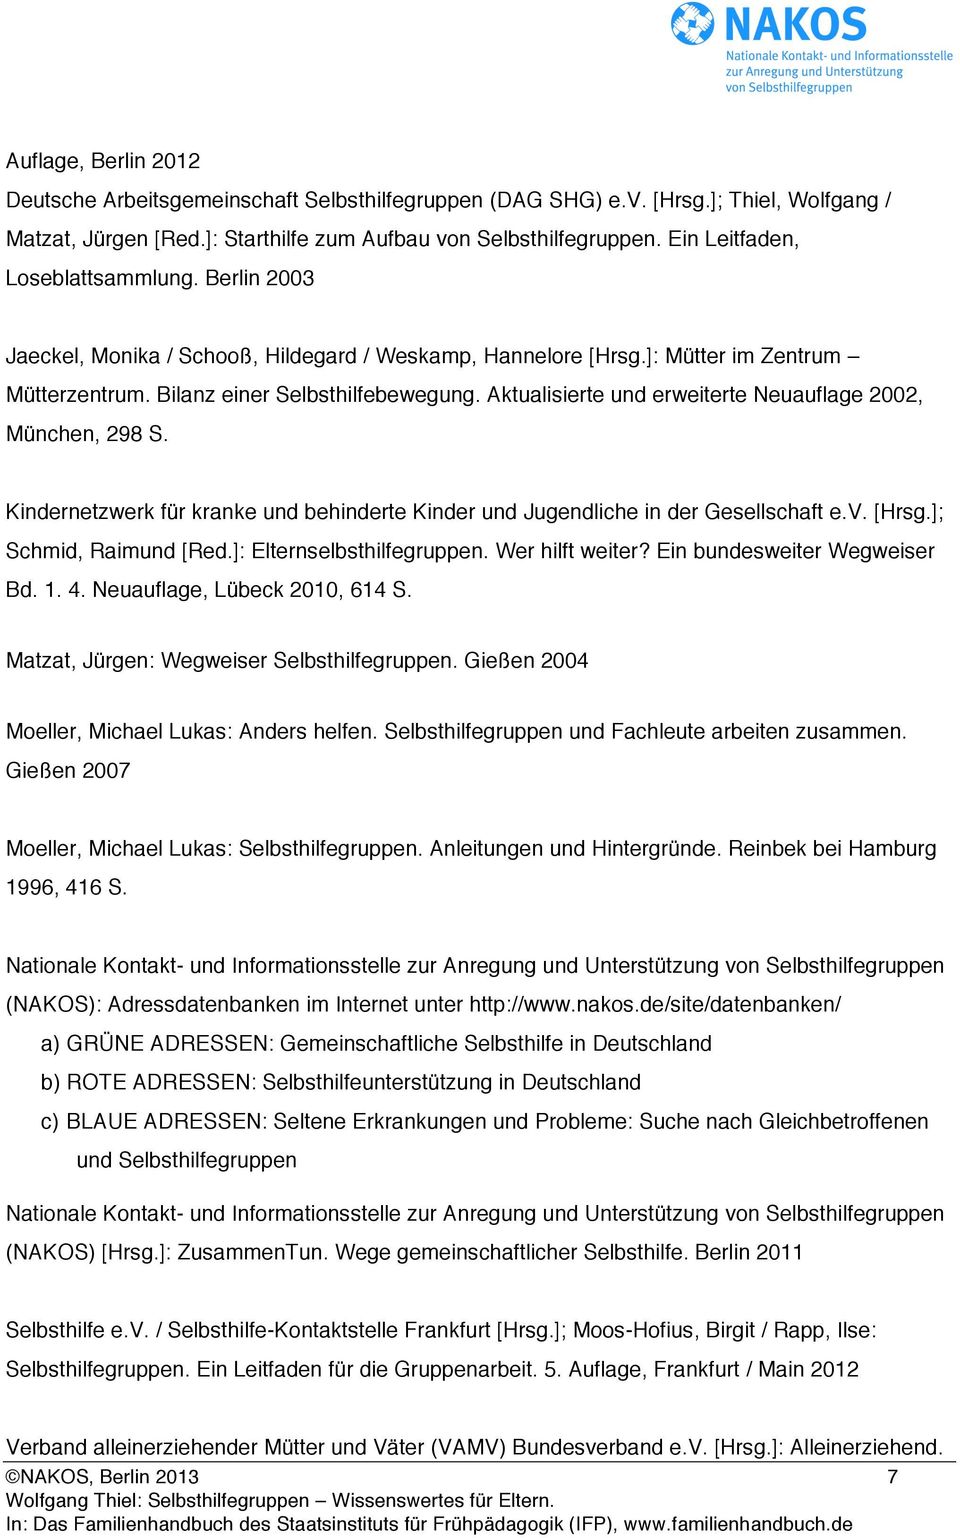 Aktualisierte und erweiterte Neuauflage 2002, München, 298 S. Kindernetzwerk für kranke und behinderte Kinder und Jugendliche in der Gesellschaft e.v. [Hrsg.]; Schmid, Raimund [Red.